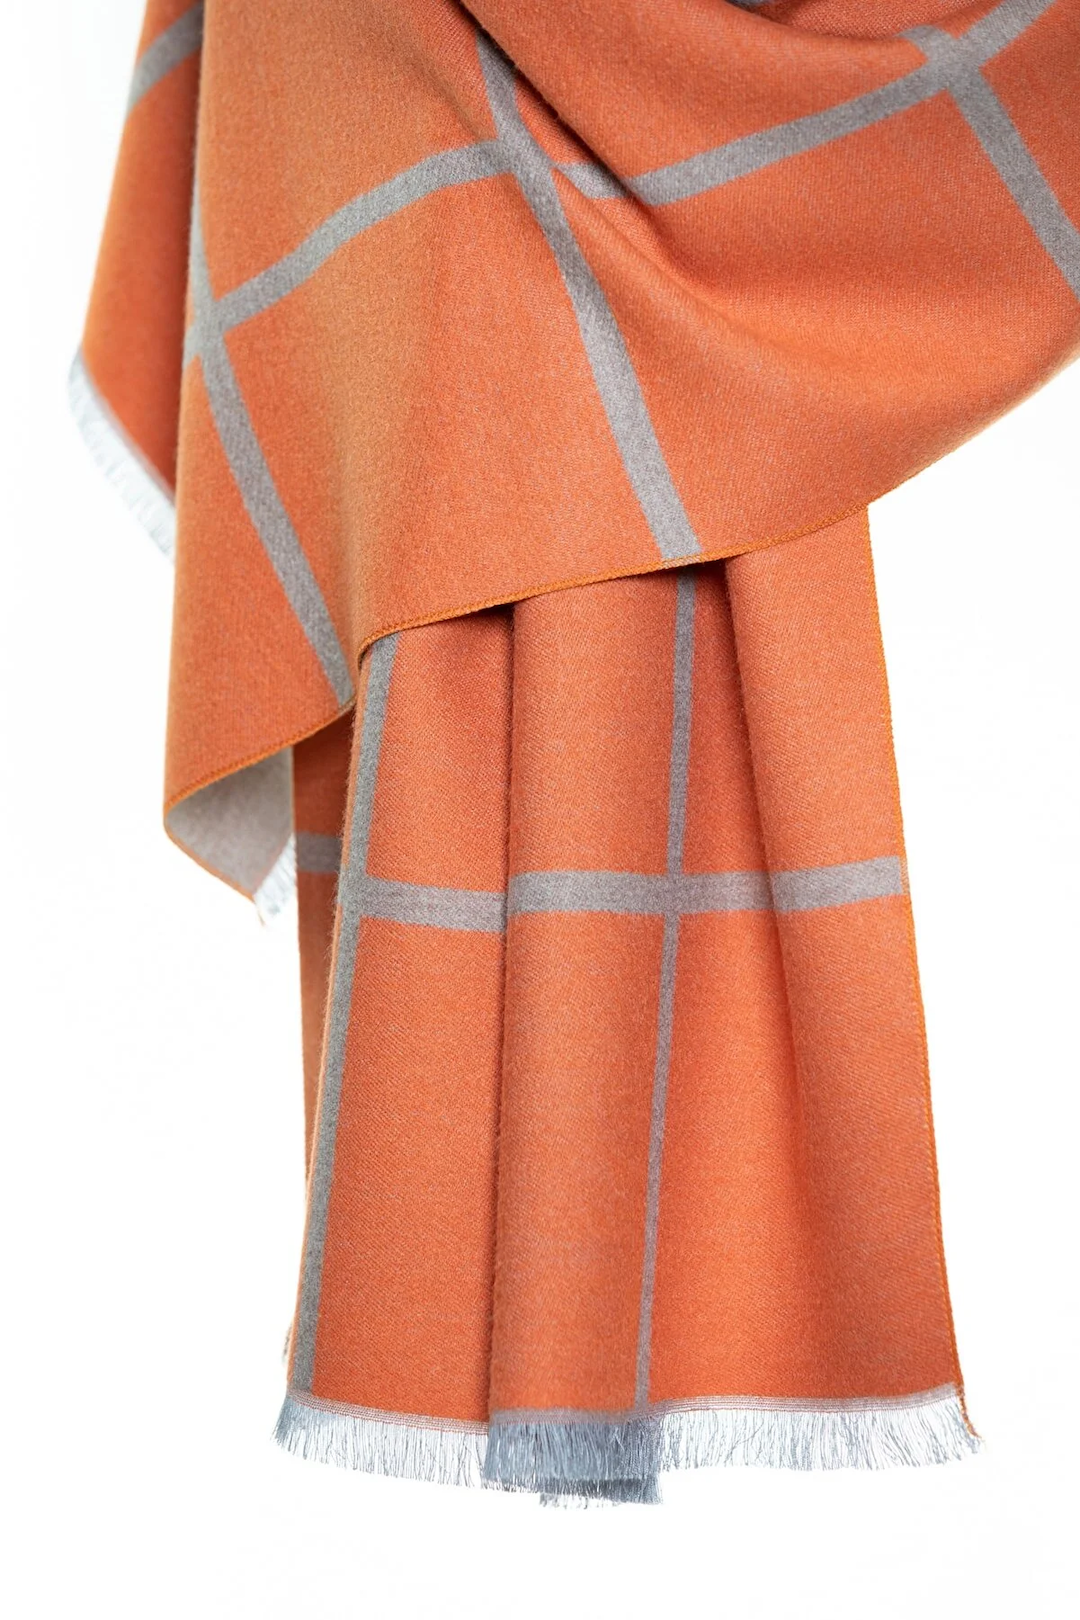 Reversible Mo-shmere Modal Cashmere Checkers Shawl - Gray Orange